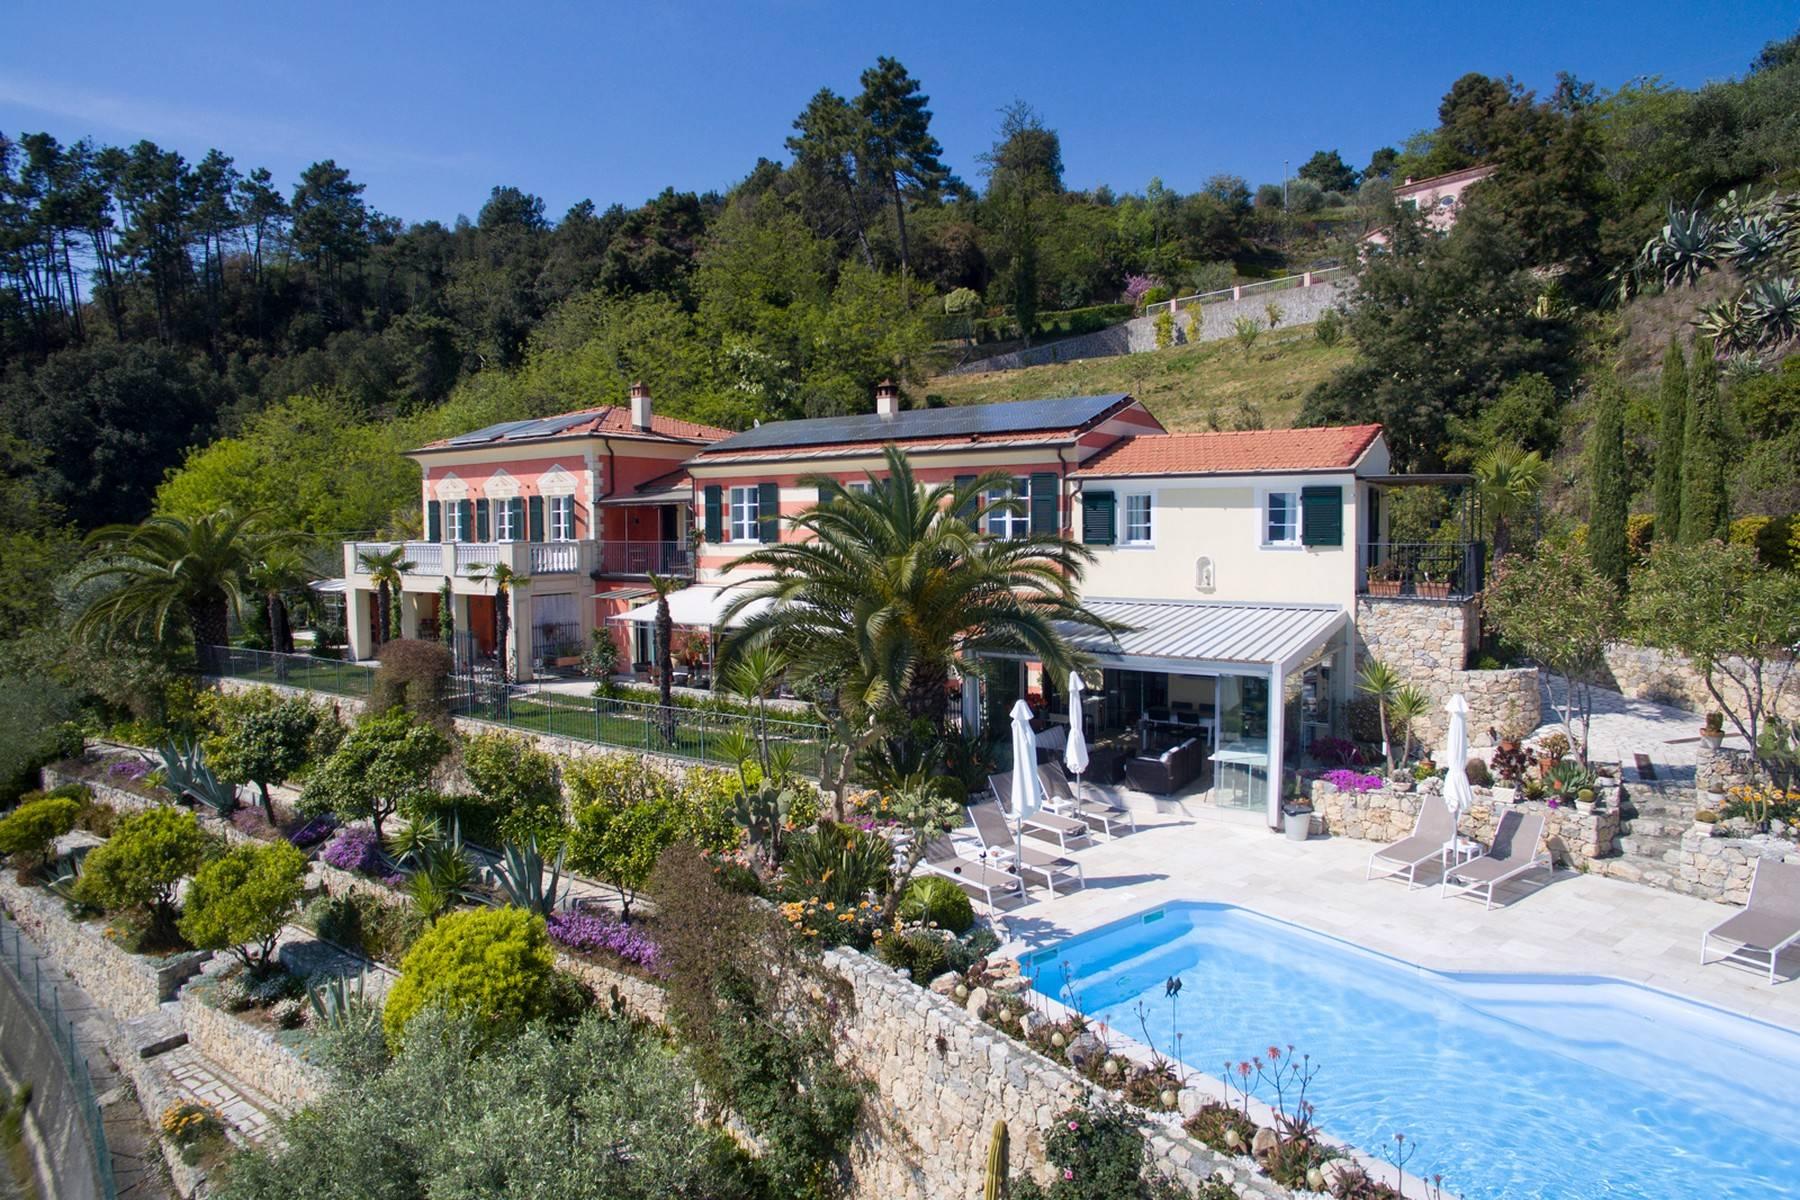 Stunning villa overlooking the bay of La Spezia - 1